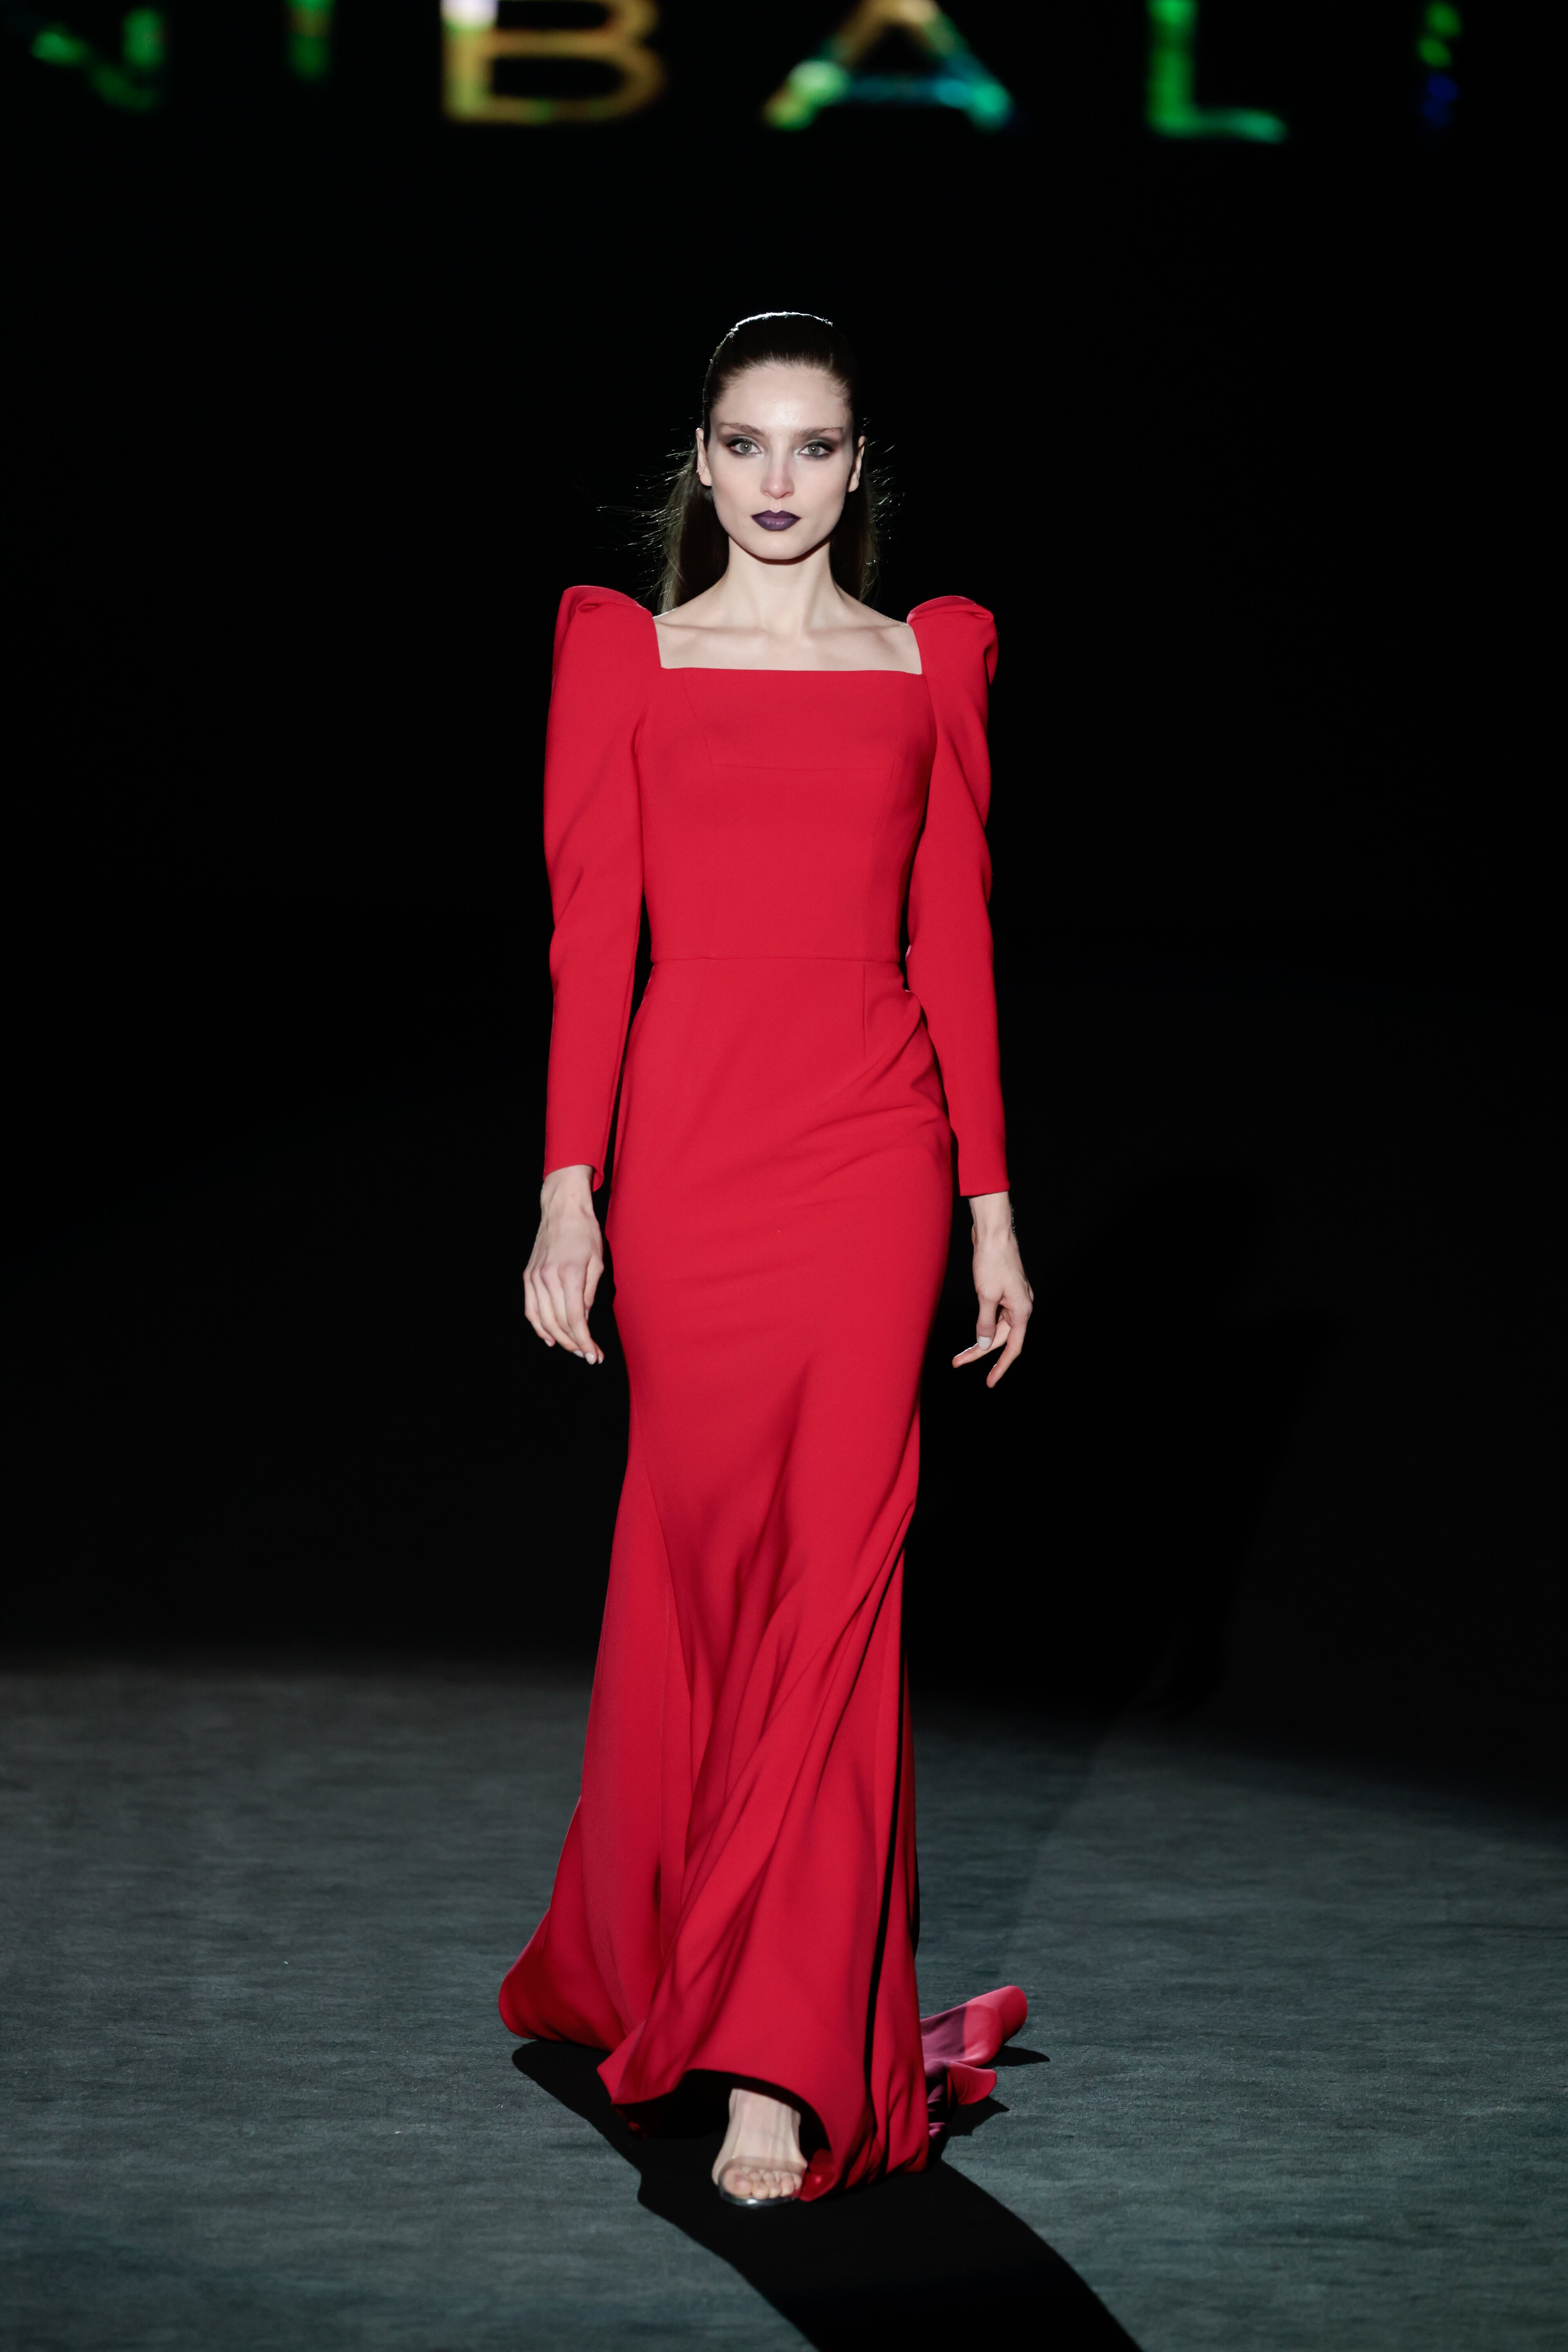 Vestido clásico en rojo de la colección otoño/invierno 23/24 de Hannibal Laguna | foto: Gtres